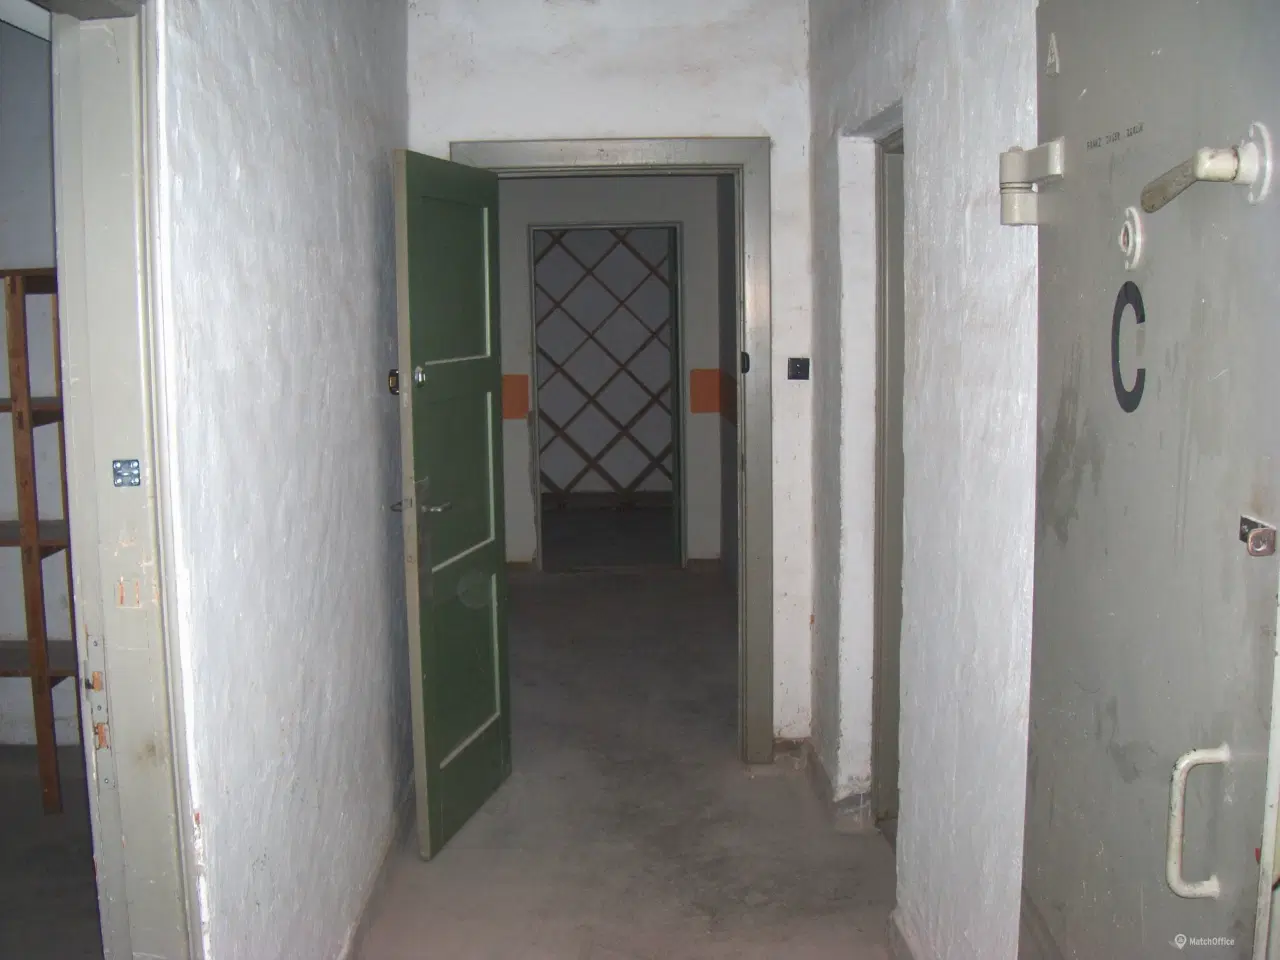 Billede 5 - Depotrum udlejes på den gamle Randers Kaserne